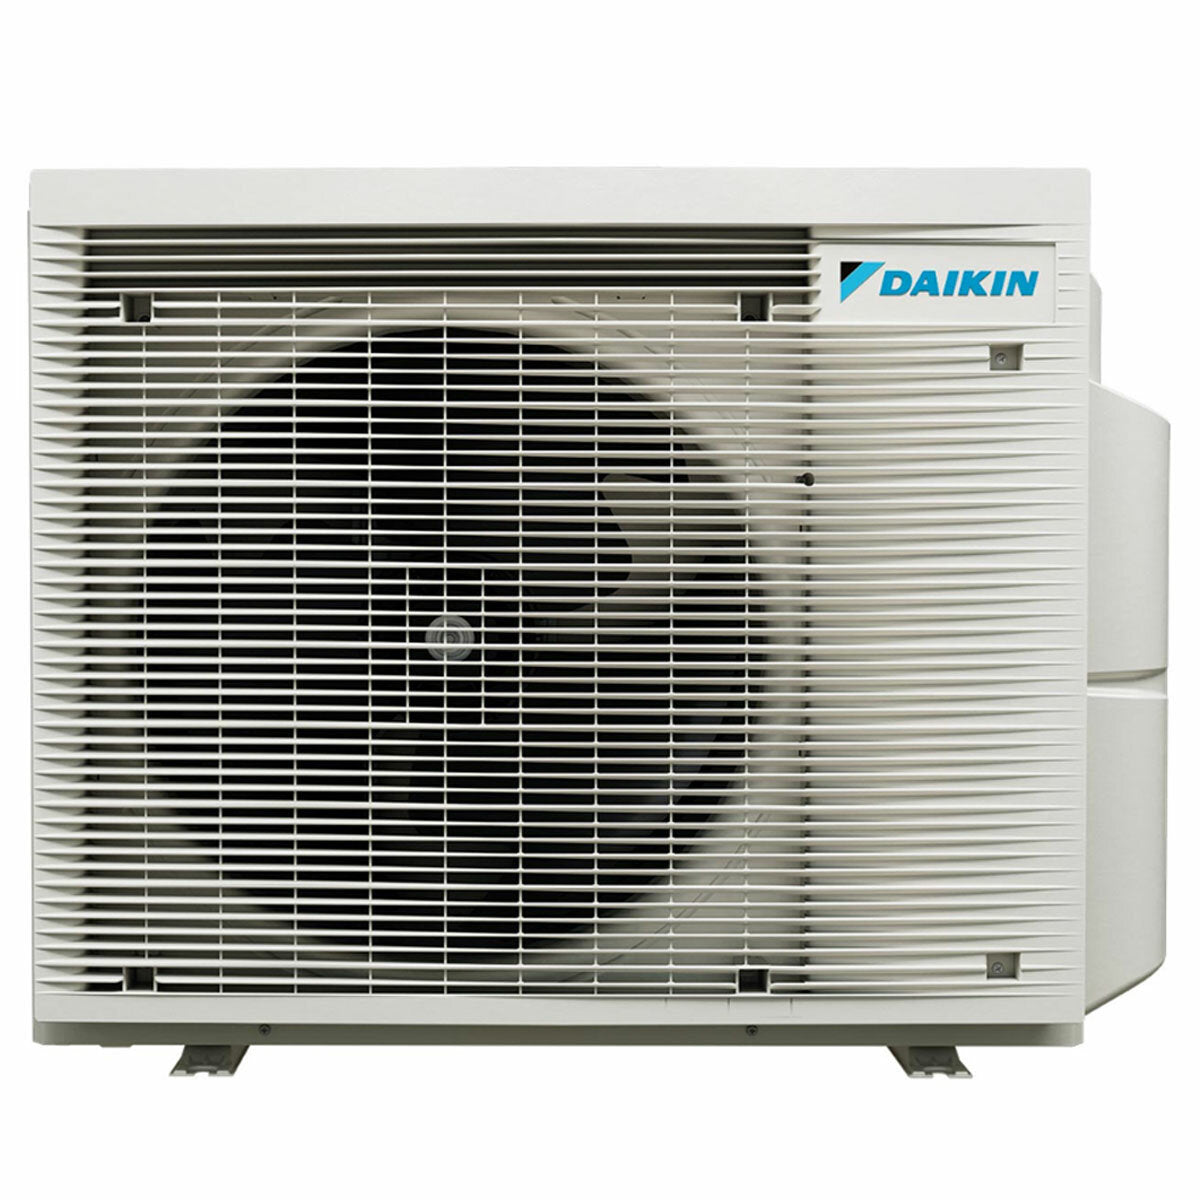 Daikin Stylish Trial Split Klimaanlage 9000 + 9000 + 18000 BTU Inverter A++ WLAN Außengerät 6,8 kW